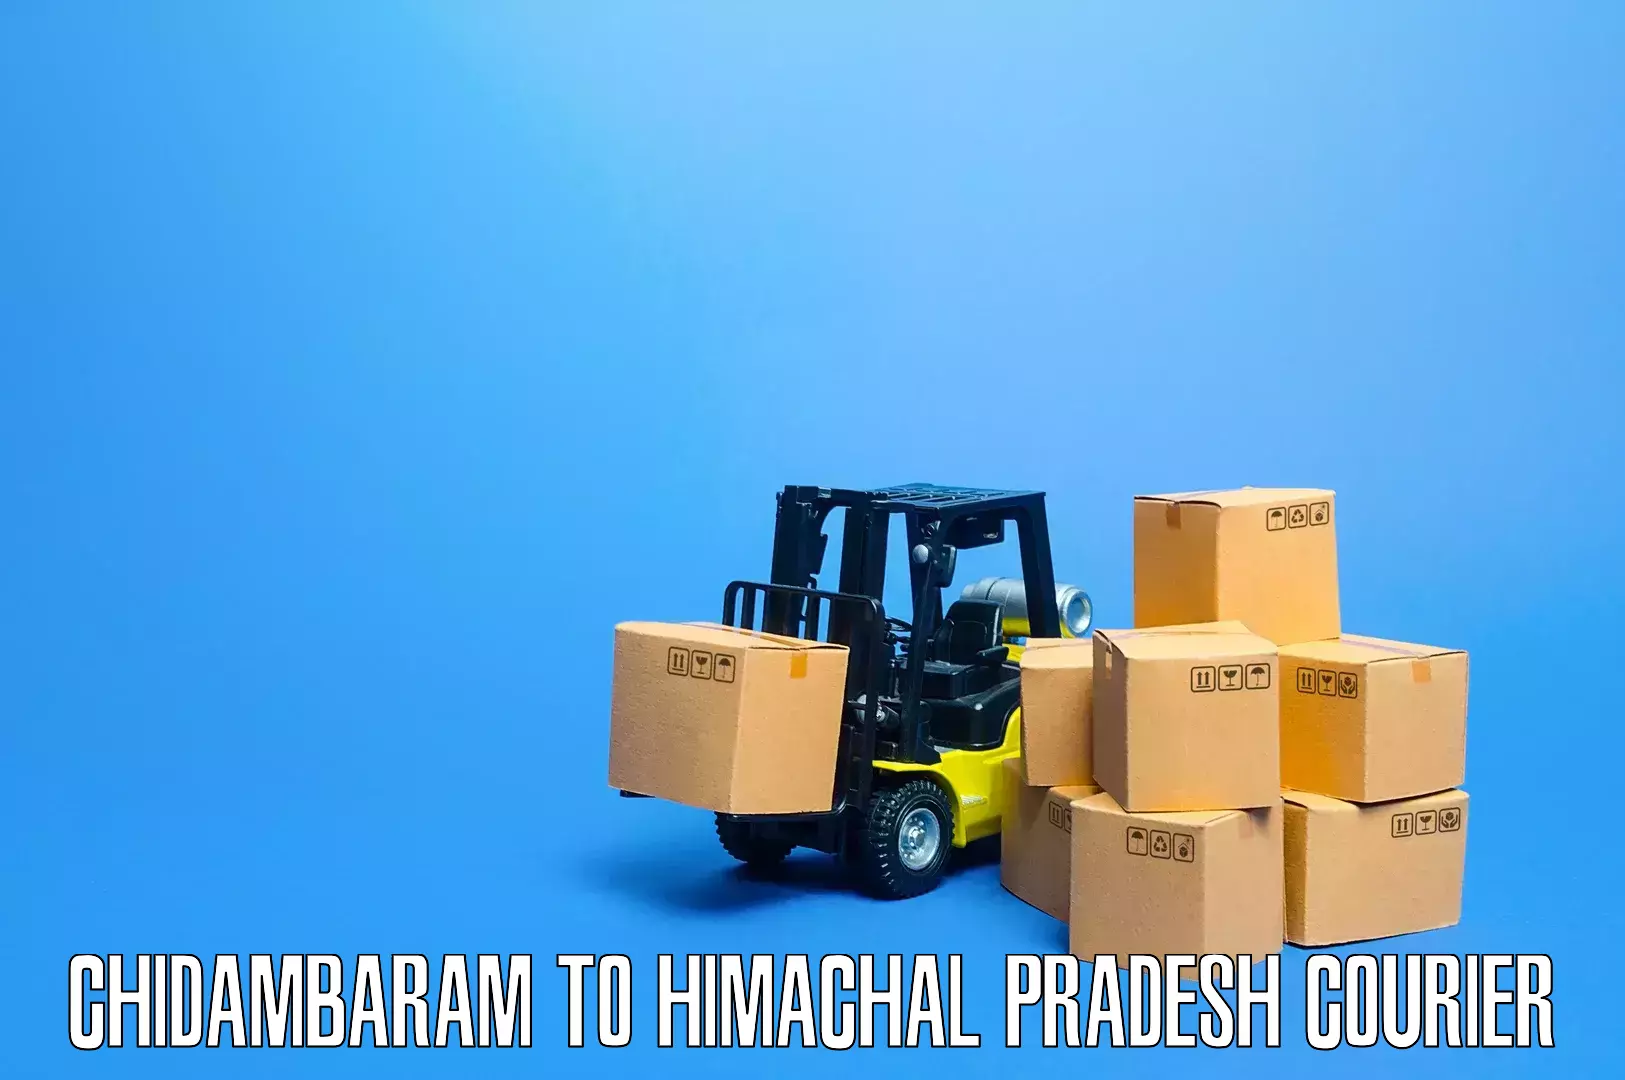 Furniture moving strategies Chidambaram to Chowari